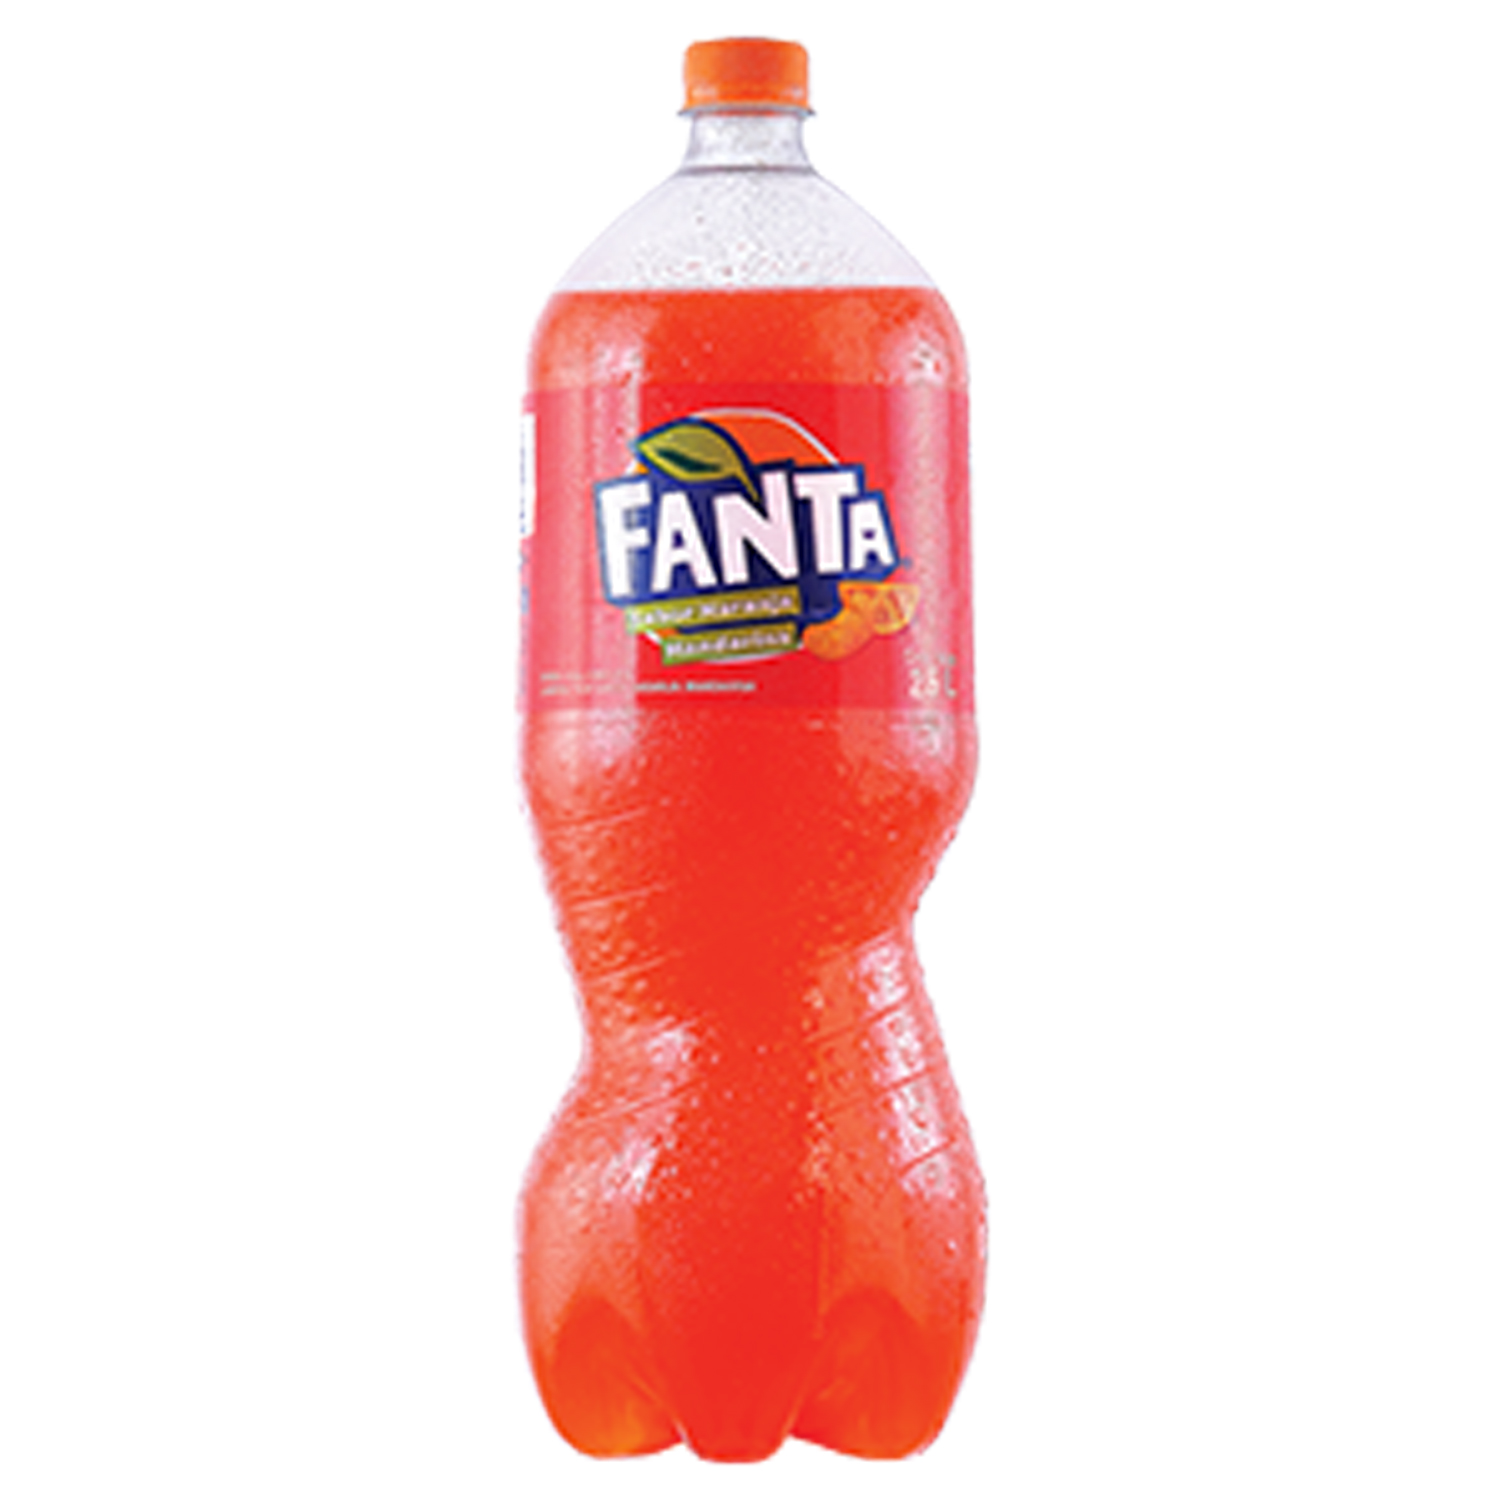 Botella de Fanta Mandarina 2L